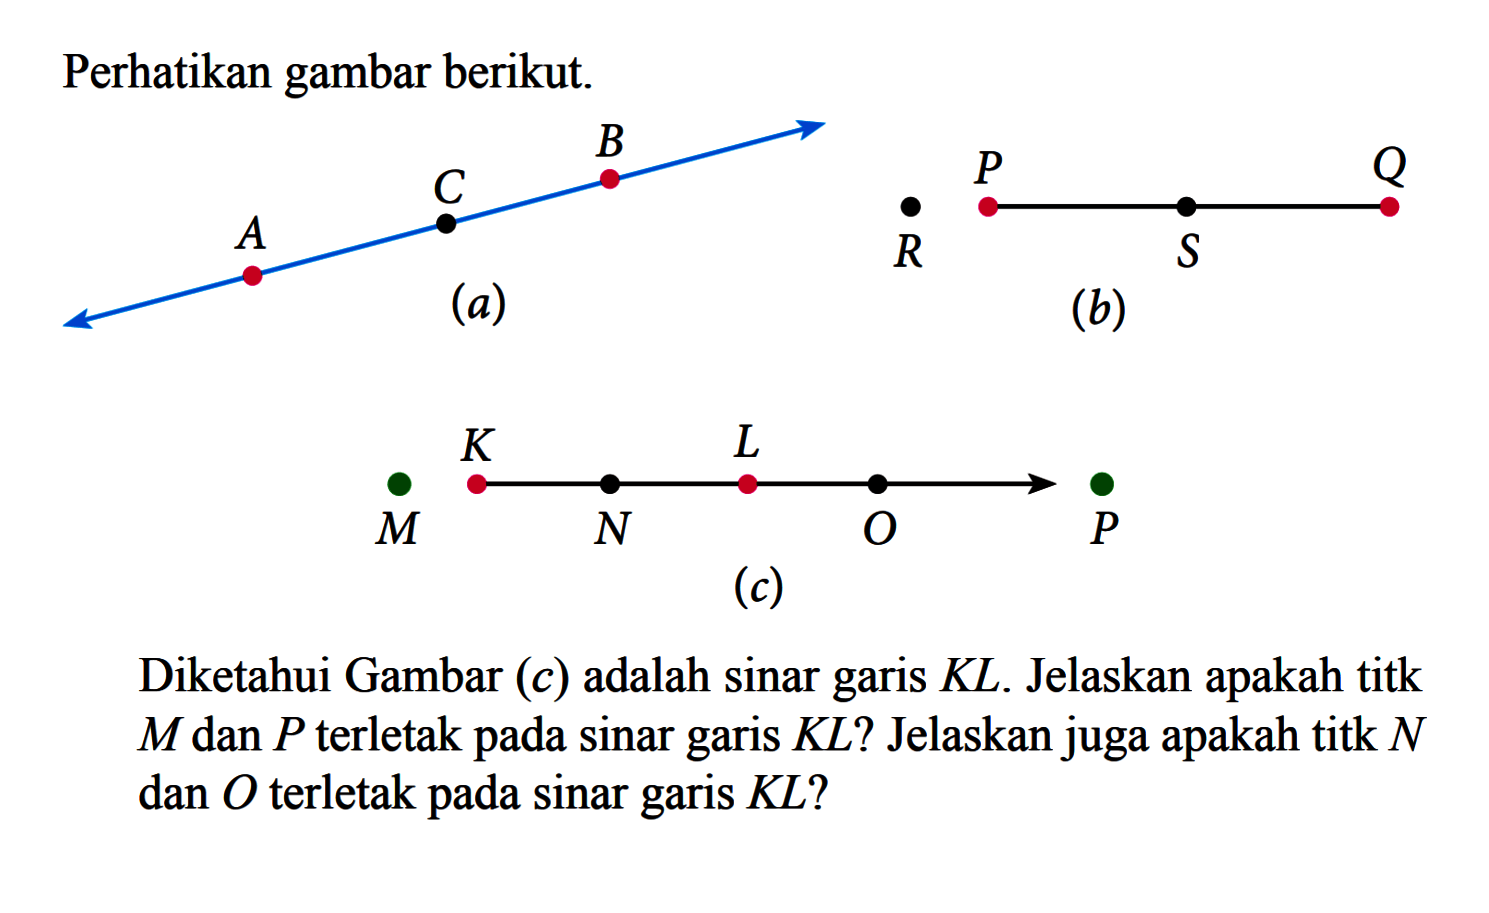 Perhatikan gambar berikut.(b)Diketahui Gambar  (c)  adalah sinar garis  K L . Jelaskan apakah titk  M  dan  P  terletak pada sinar garis  K L  ? Jelaskan juga apakah titk  N  dan  O  terletak pada sinar garis  K L  ?